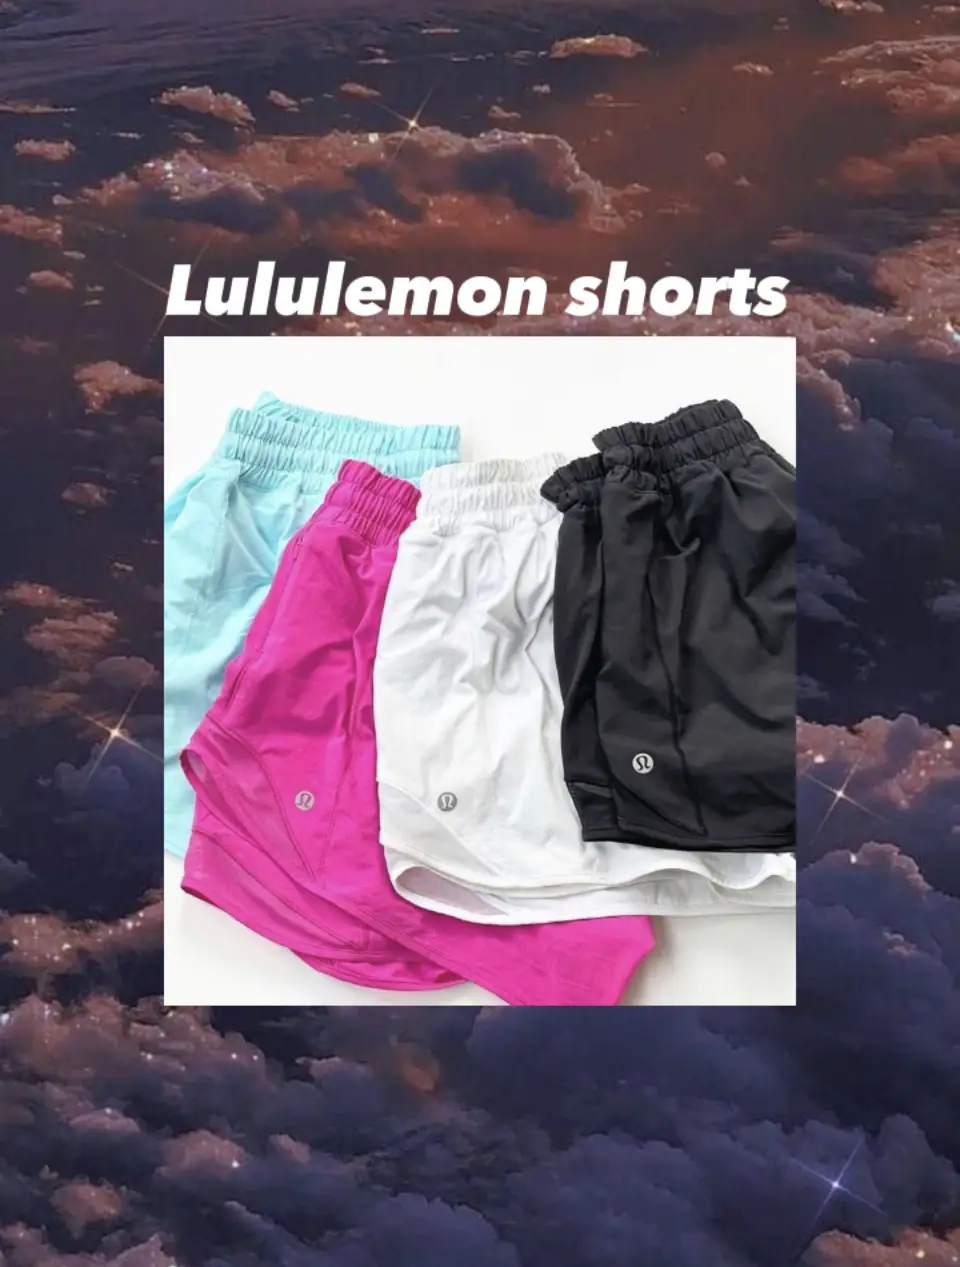 my lulu shorts hack! ;) works wonders 🤌🏽 #lululemon #lululemonshorts, lululemon outfits